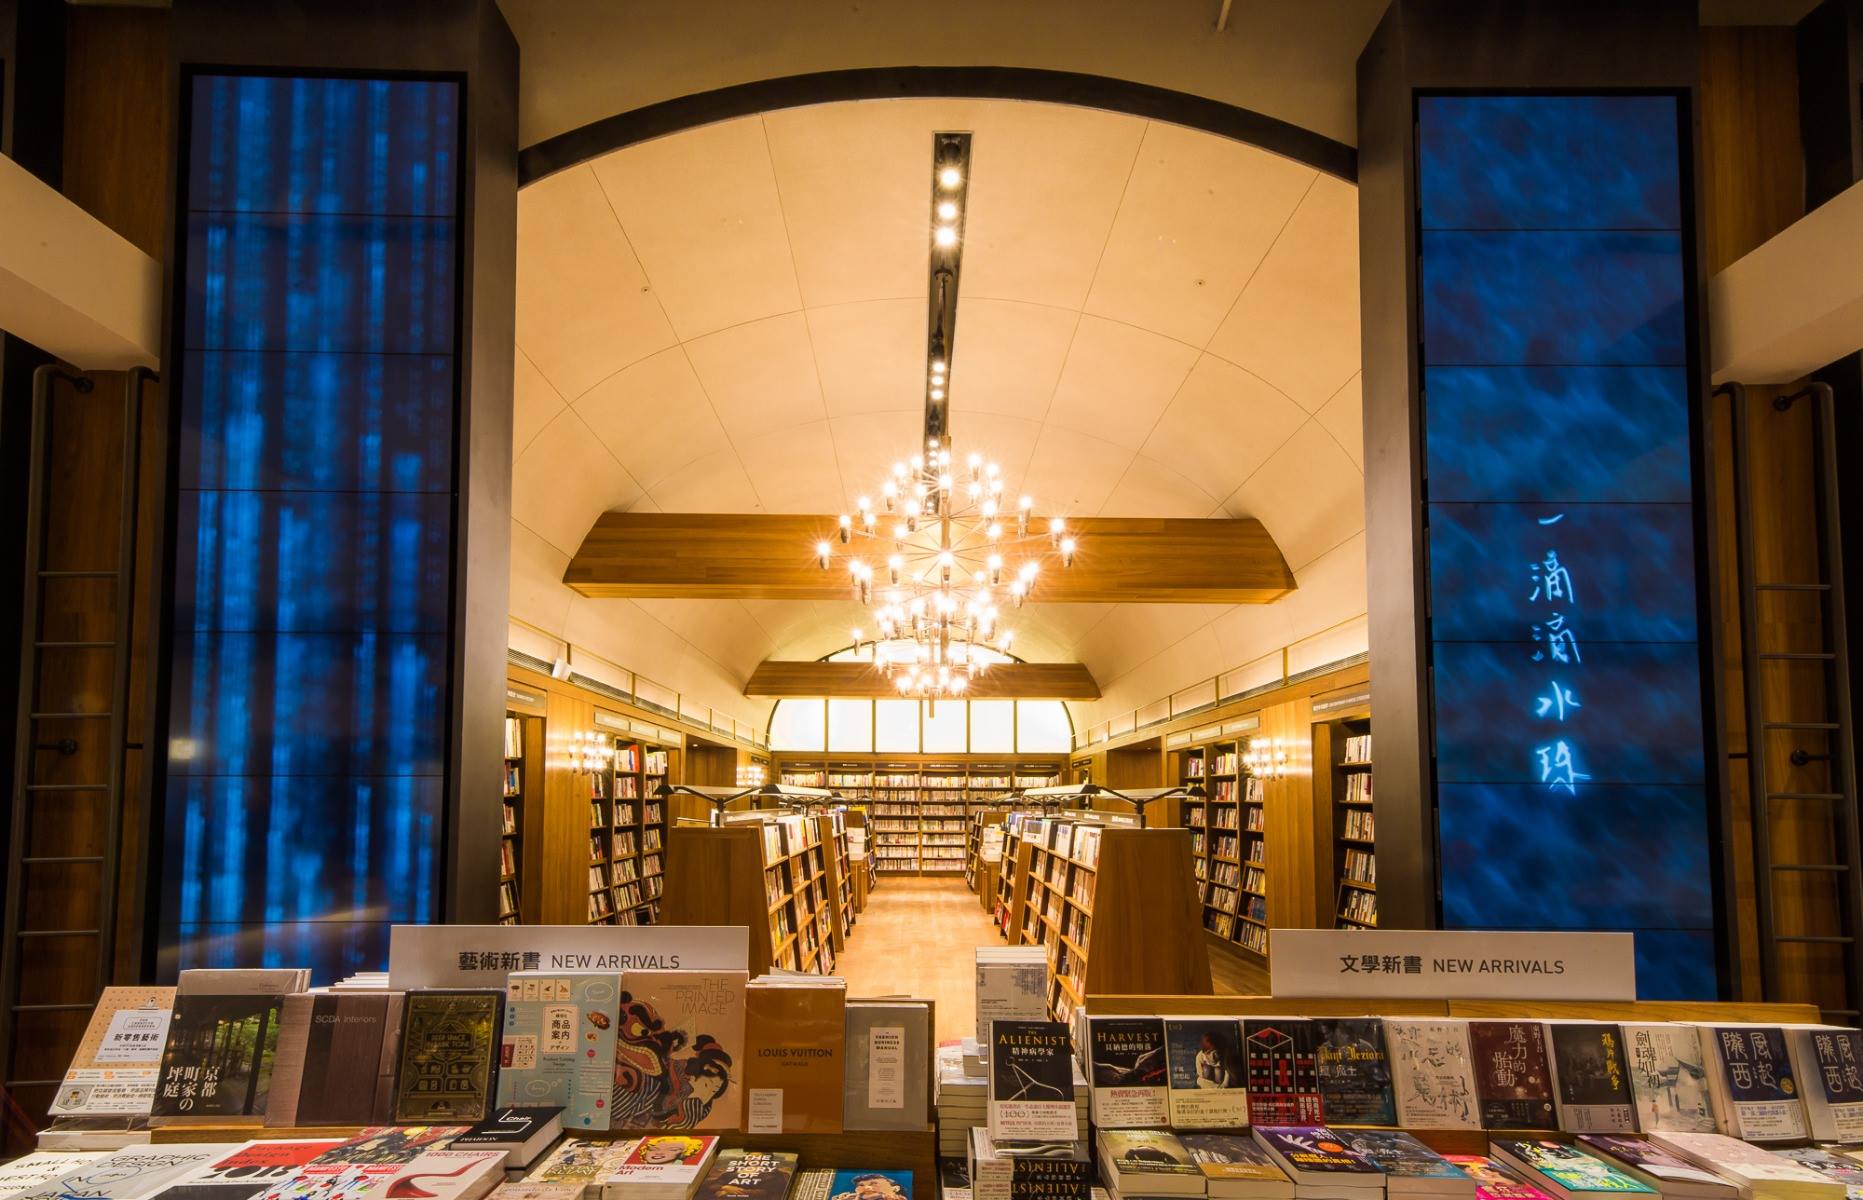 某知名大型連鎖書店故事集 – 幻化動態的柱面